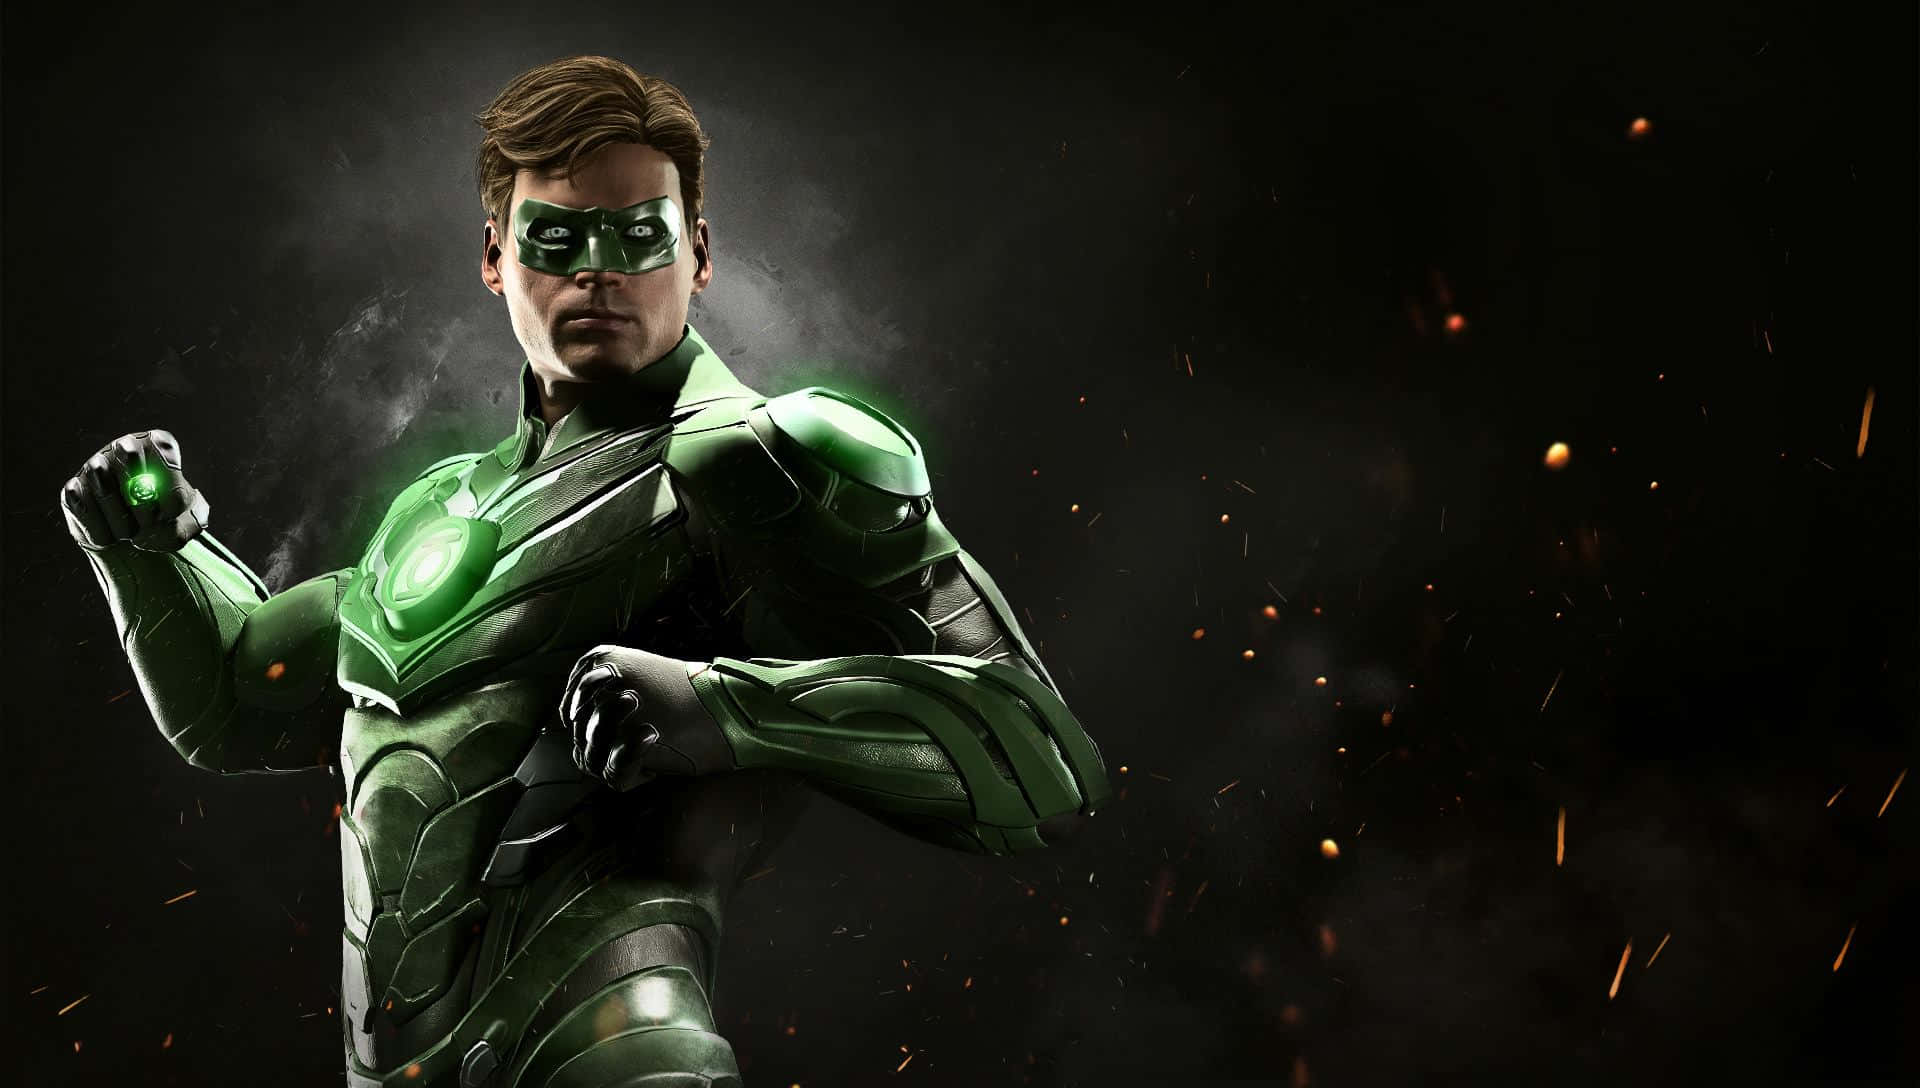 Hintergrundbildmit Green Lantern